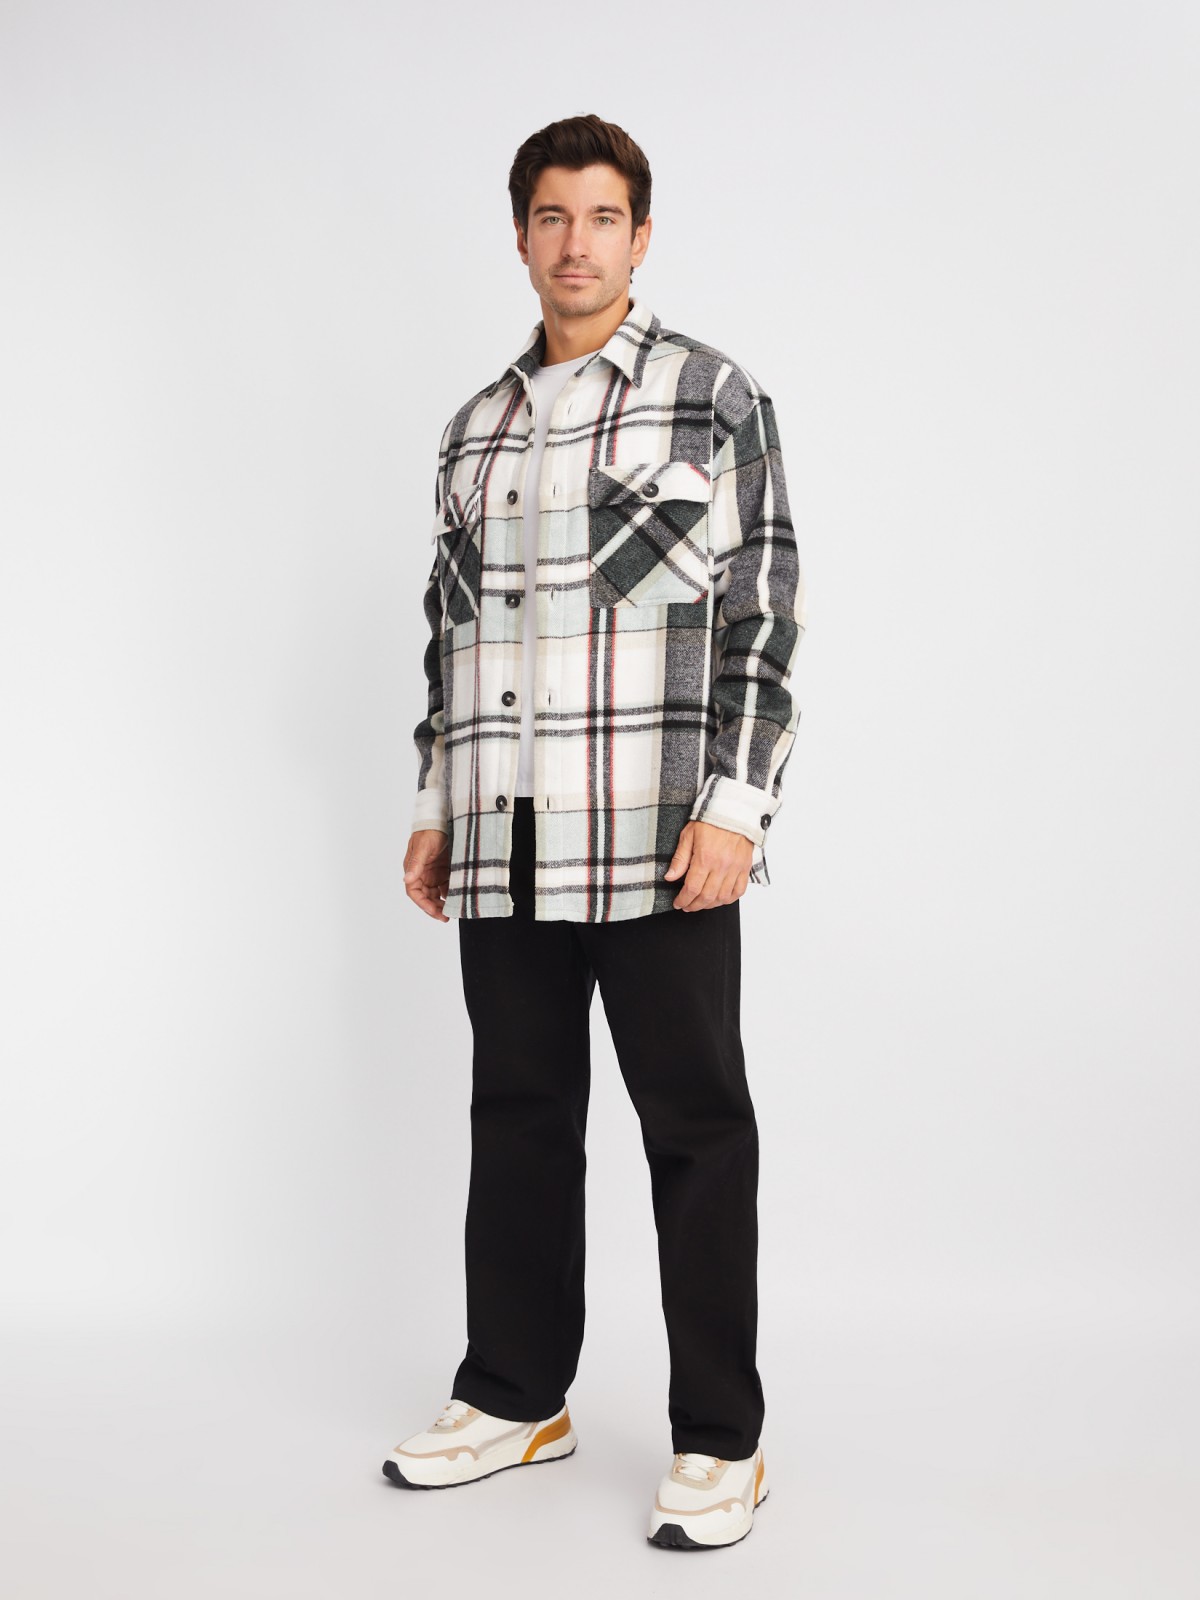 Куртка-рубашка из хлопка с длинным рукавом и узором в клетку zolla 014122159153, цвет мятный, размер S - фото 2